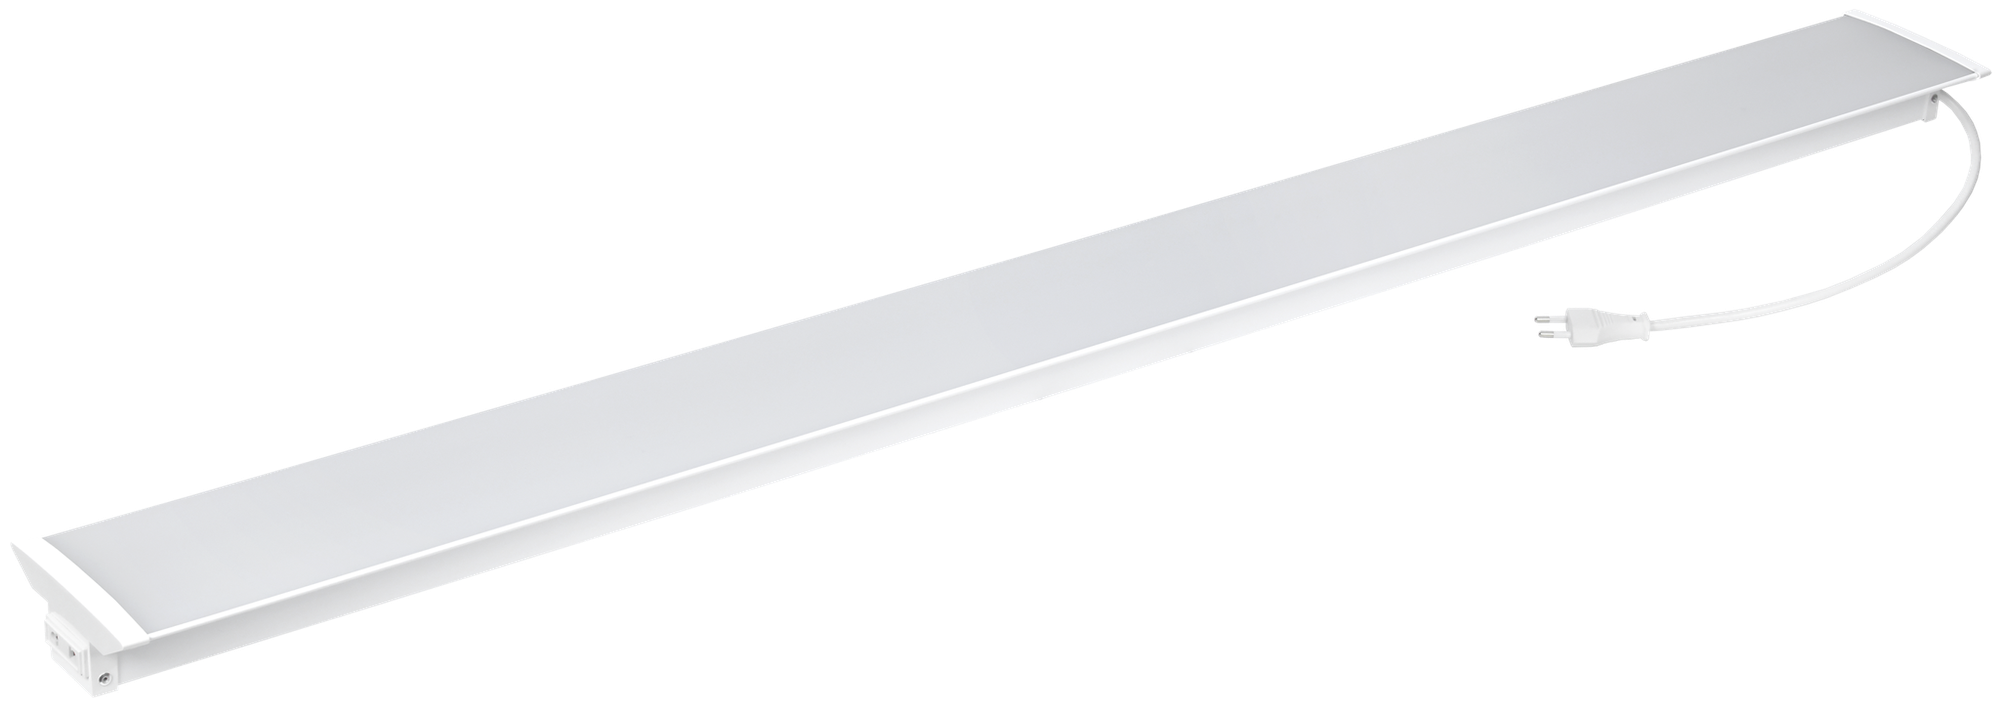 Светильник линейный светодиодный IEK 1201 1220 мм 36 Вт холодный белый свет